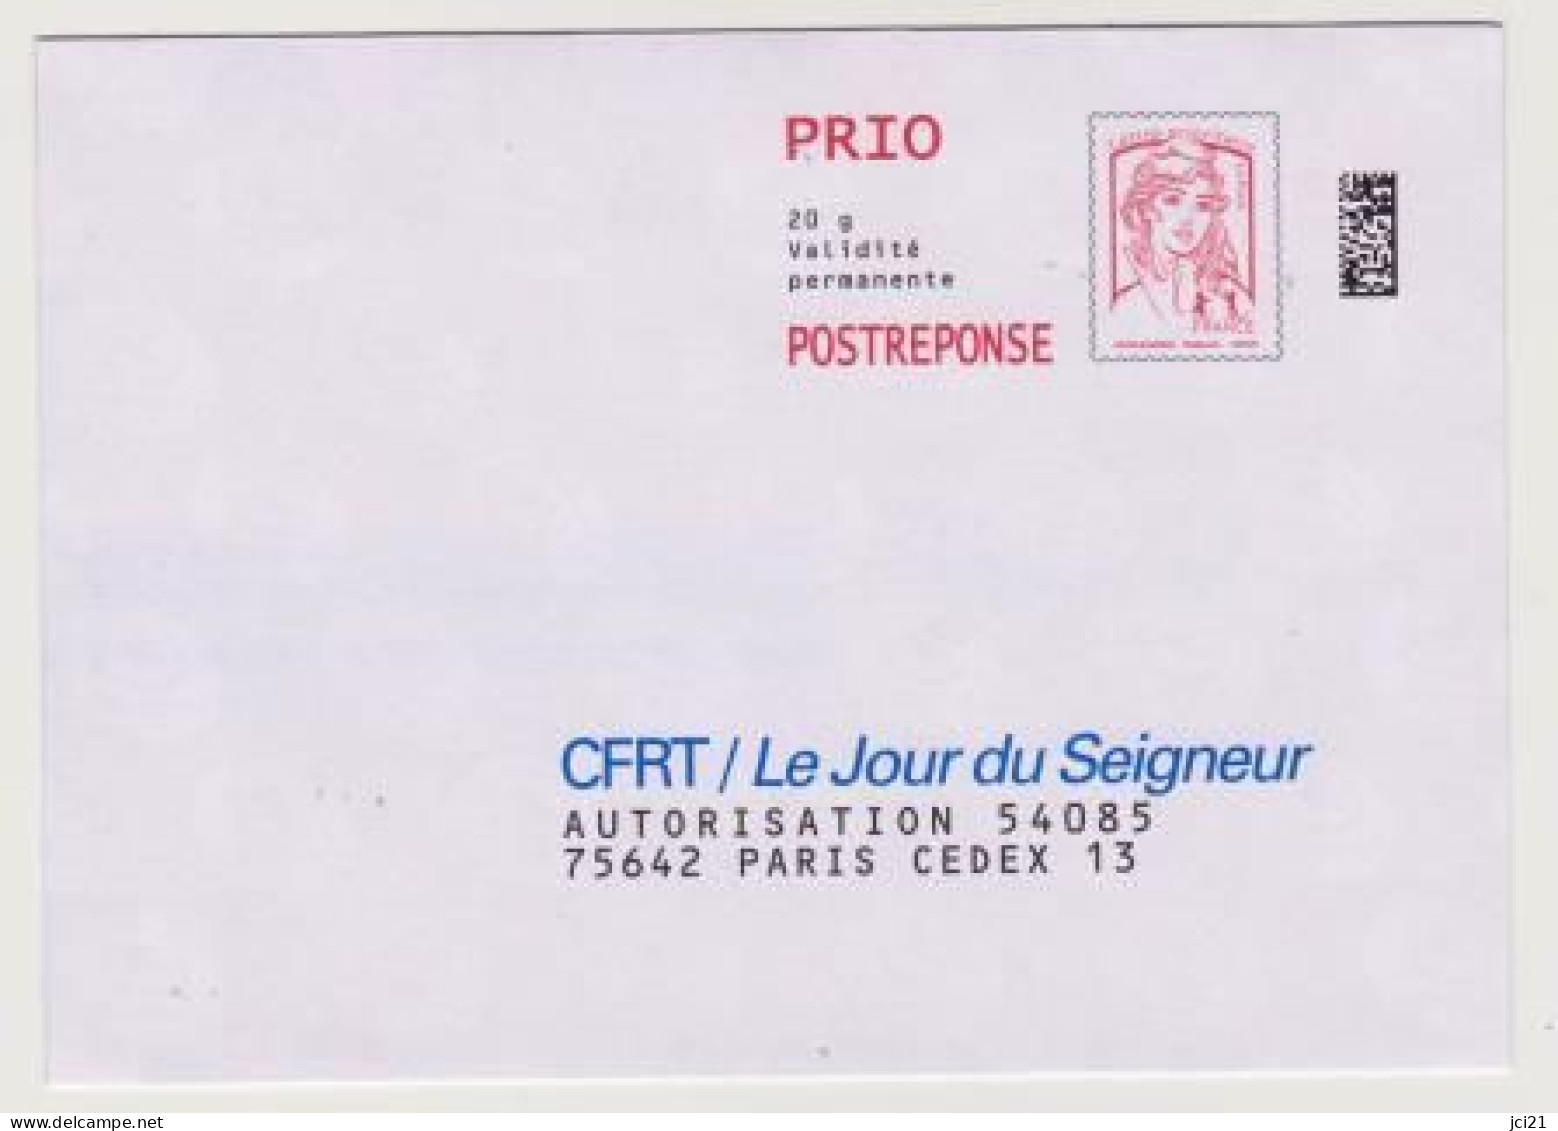 PAP "Marianne De La Jeunesse" Ciappa&Kavena POSTREPONSE PRIO Datamatrix -CFRT/Le Jour Du Seigneur- Neuve_P453 - PAP: Antwort/Ciappa-Kavena